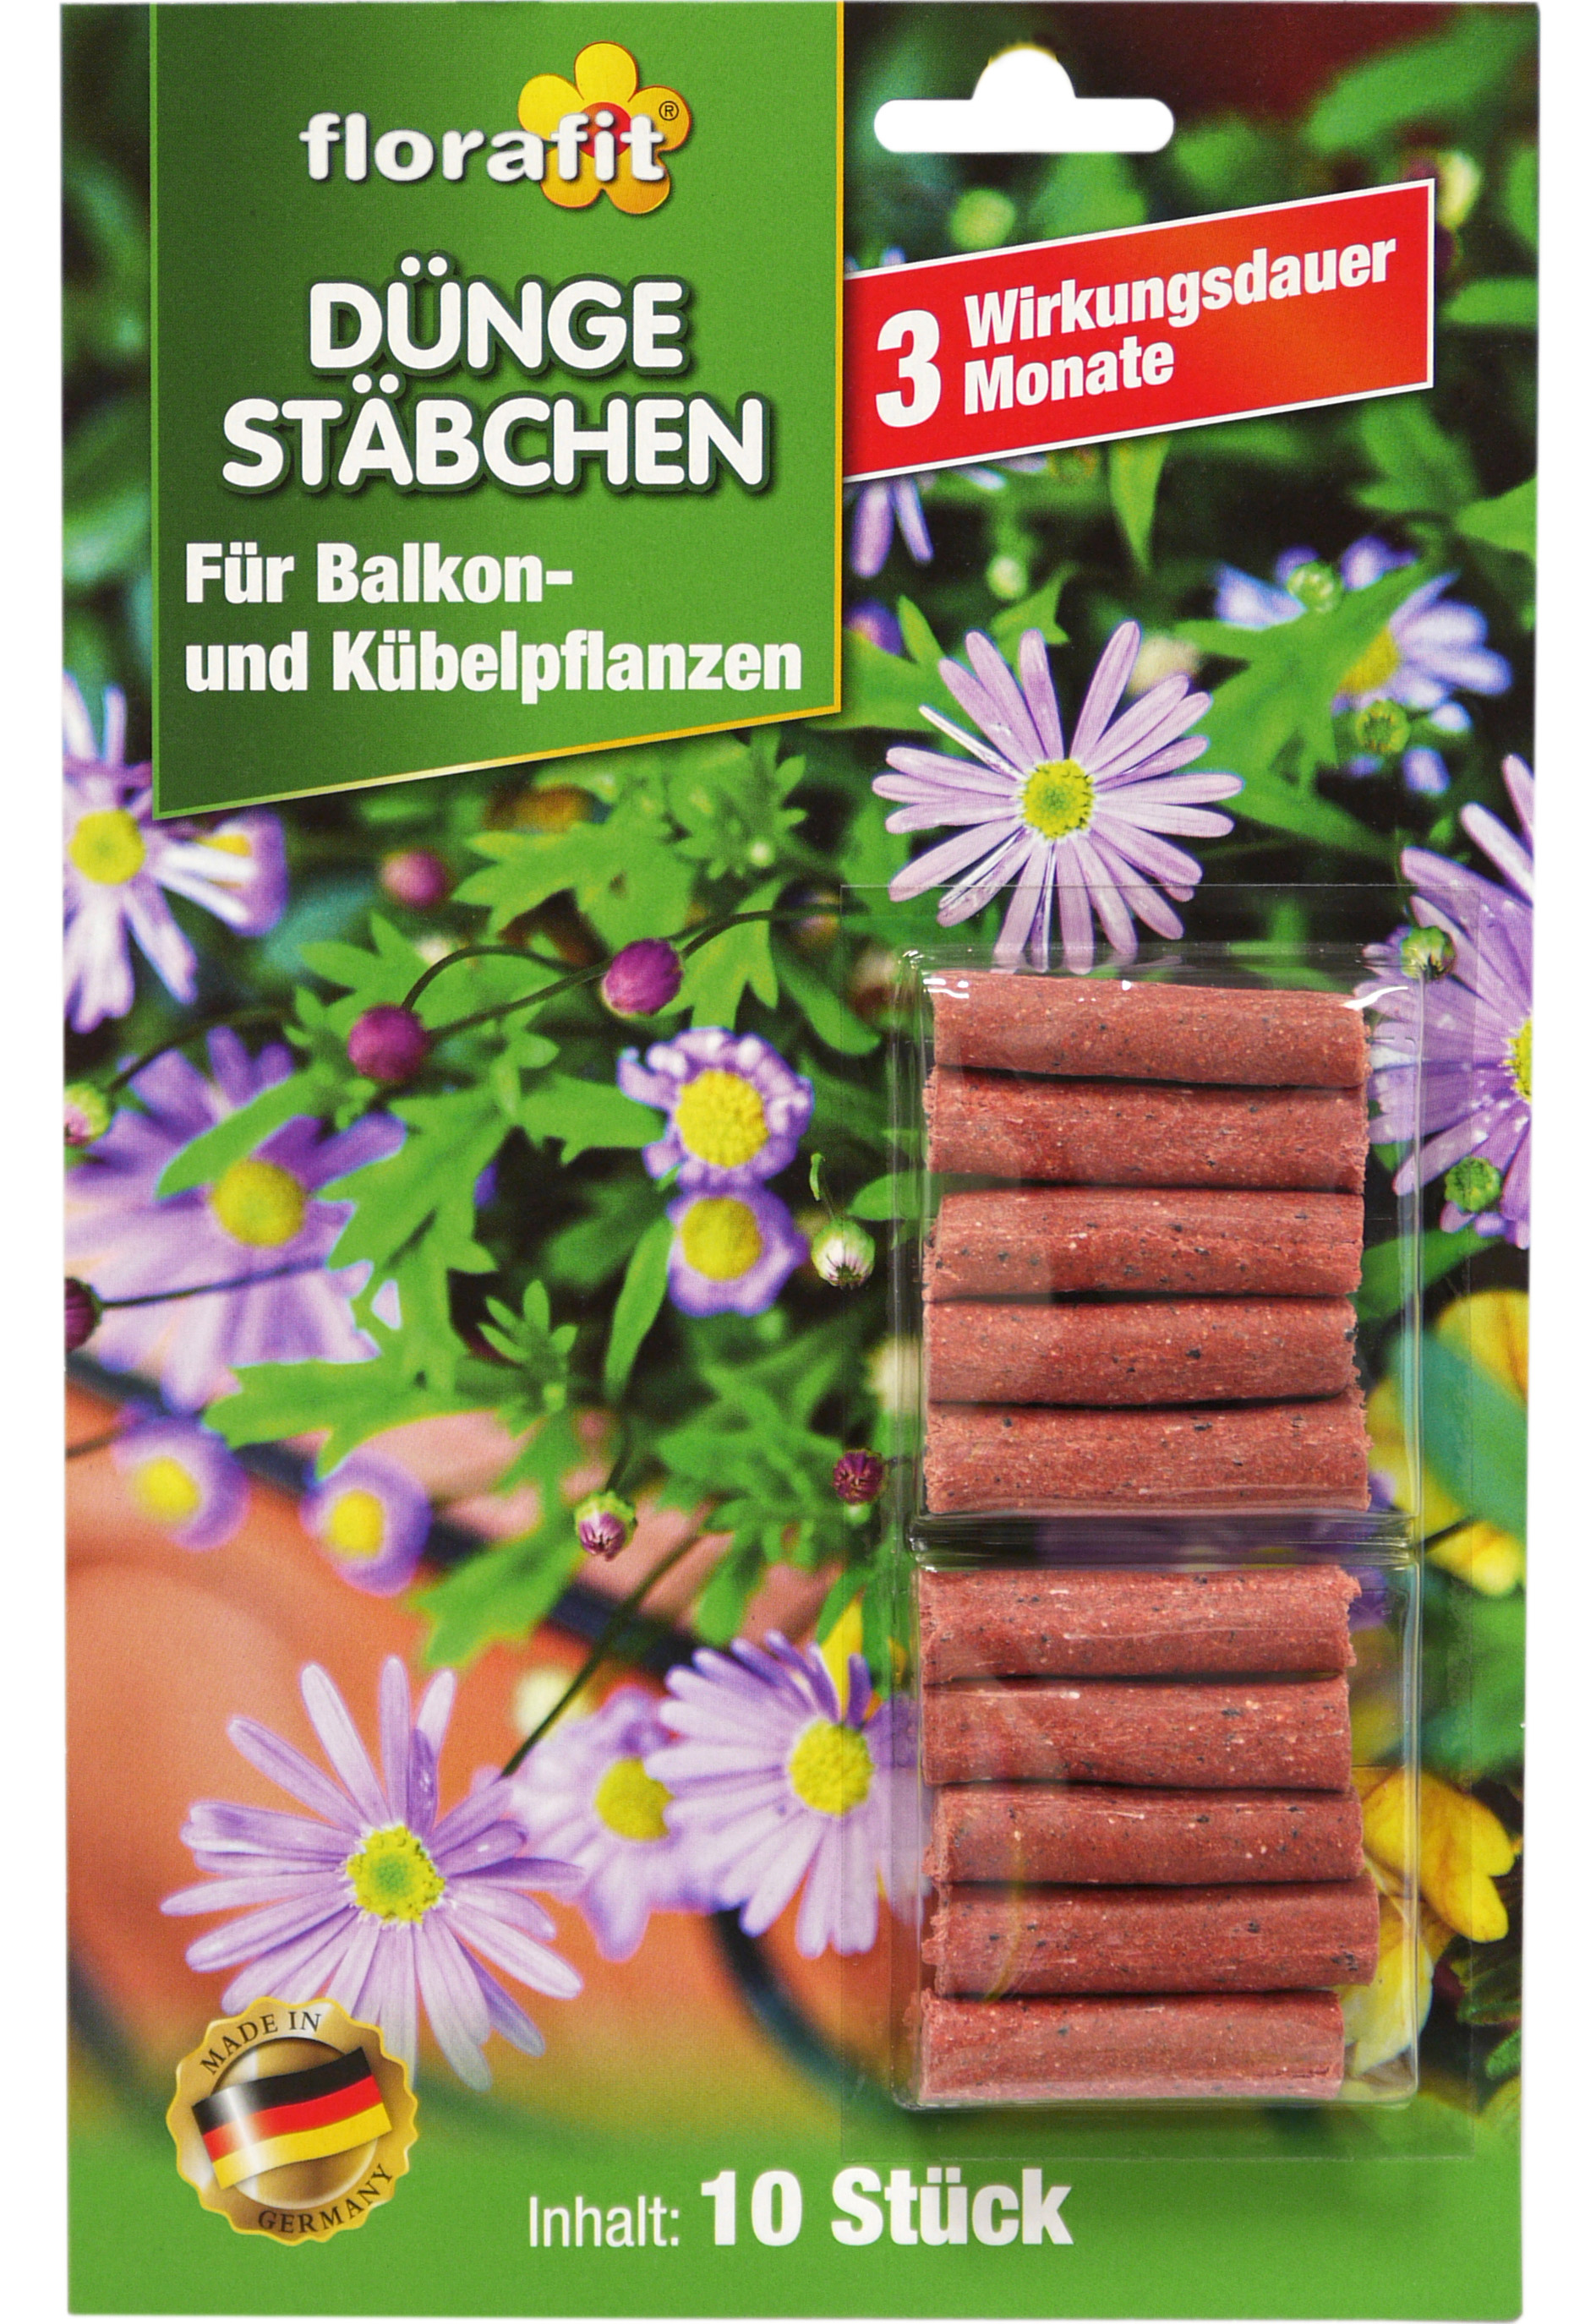 02240 - florafit Düngestäbchen für Balkon- und Kübelpflanzen 10er